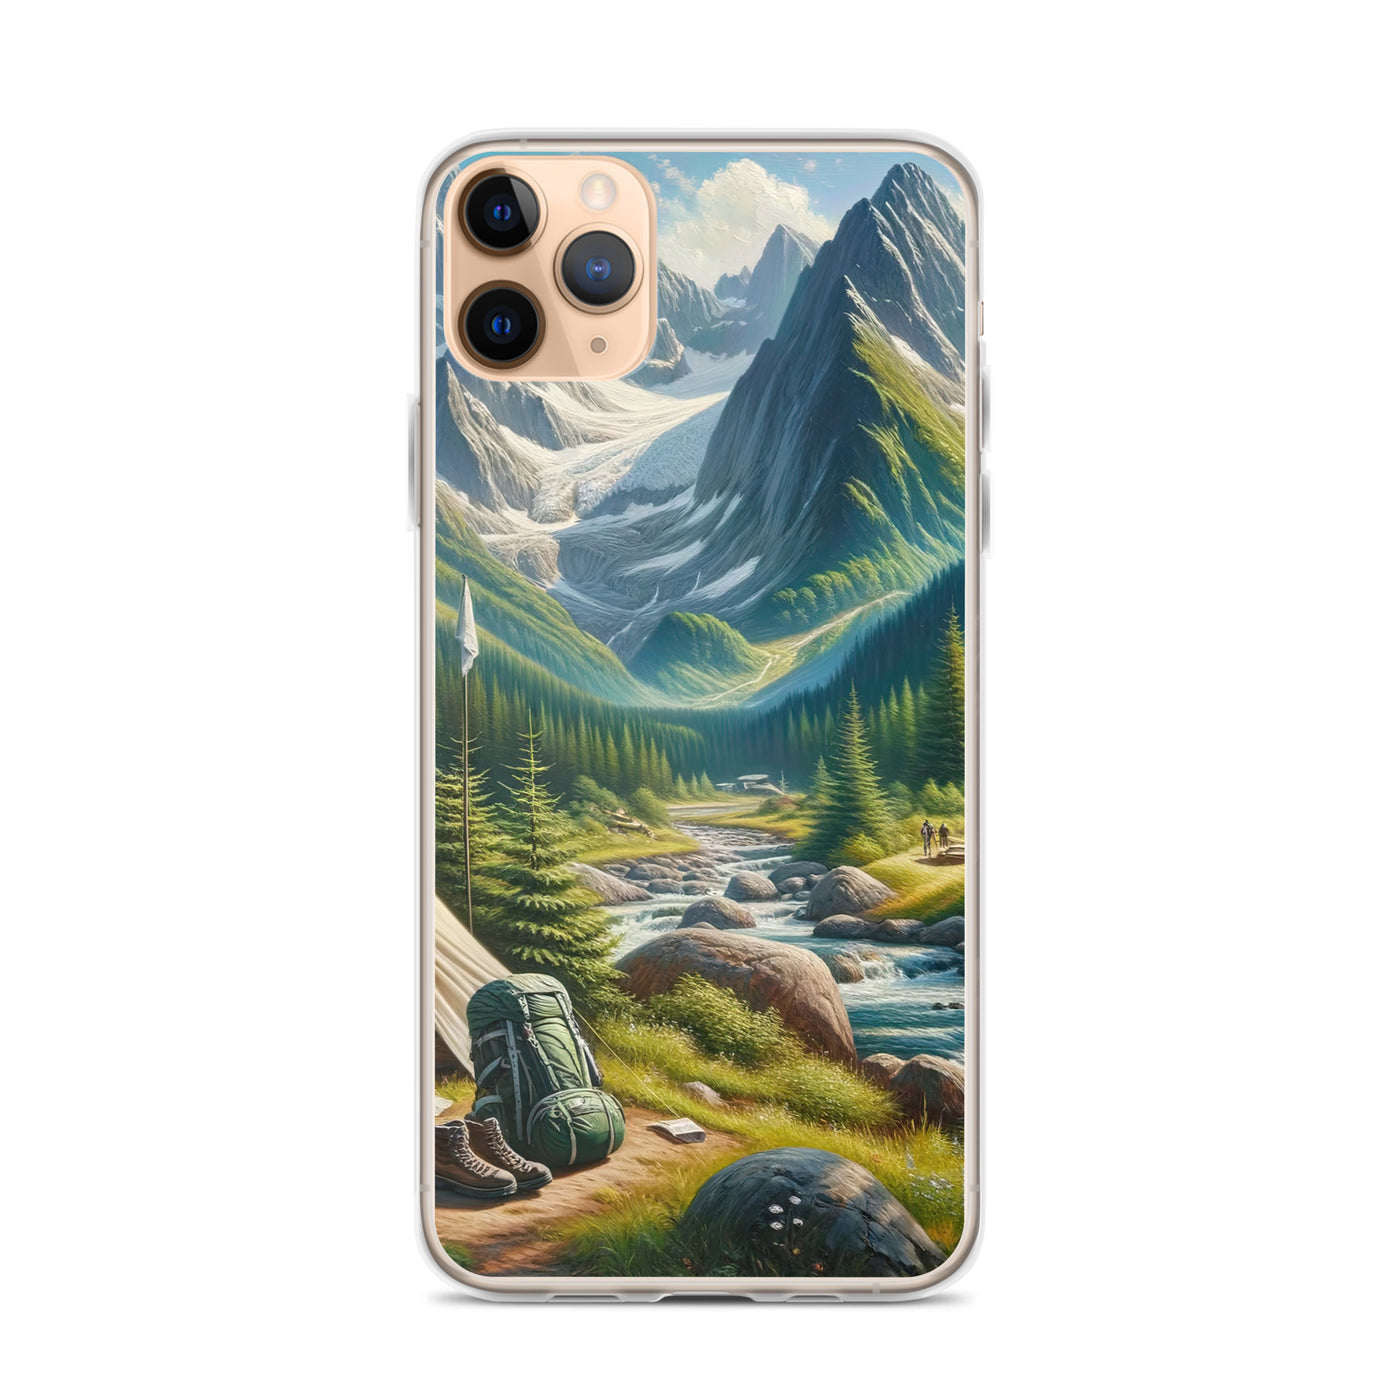 Ölgemälde der Alpensommerlandschaft mit Zelt, Gipfeln, Wäldern und Bächen - iPhone Schutzhülle (durchsichtig) camping xxx yyy zzz iPhone 11 Pro Max